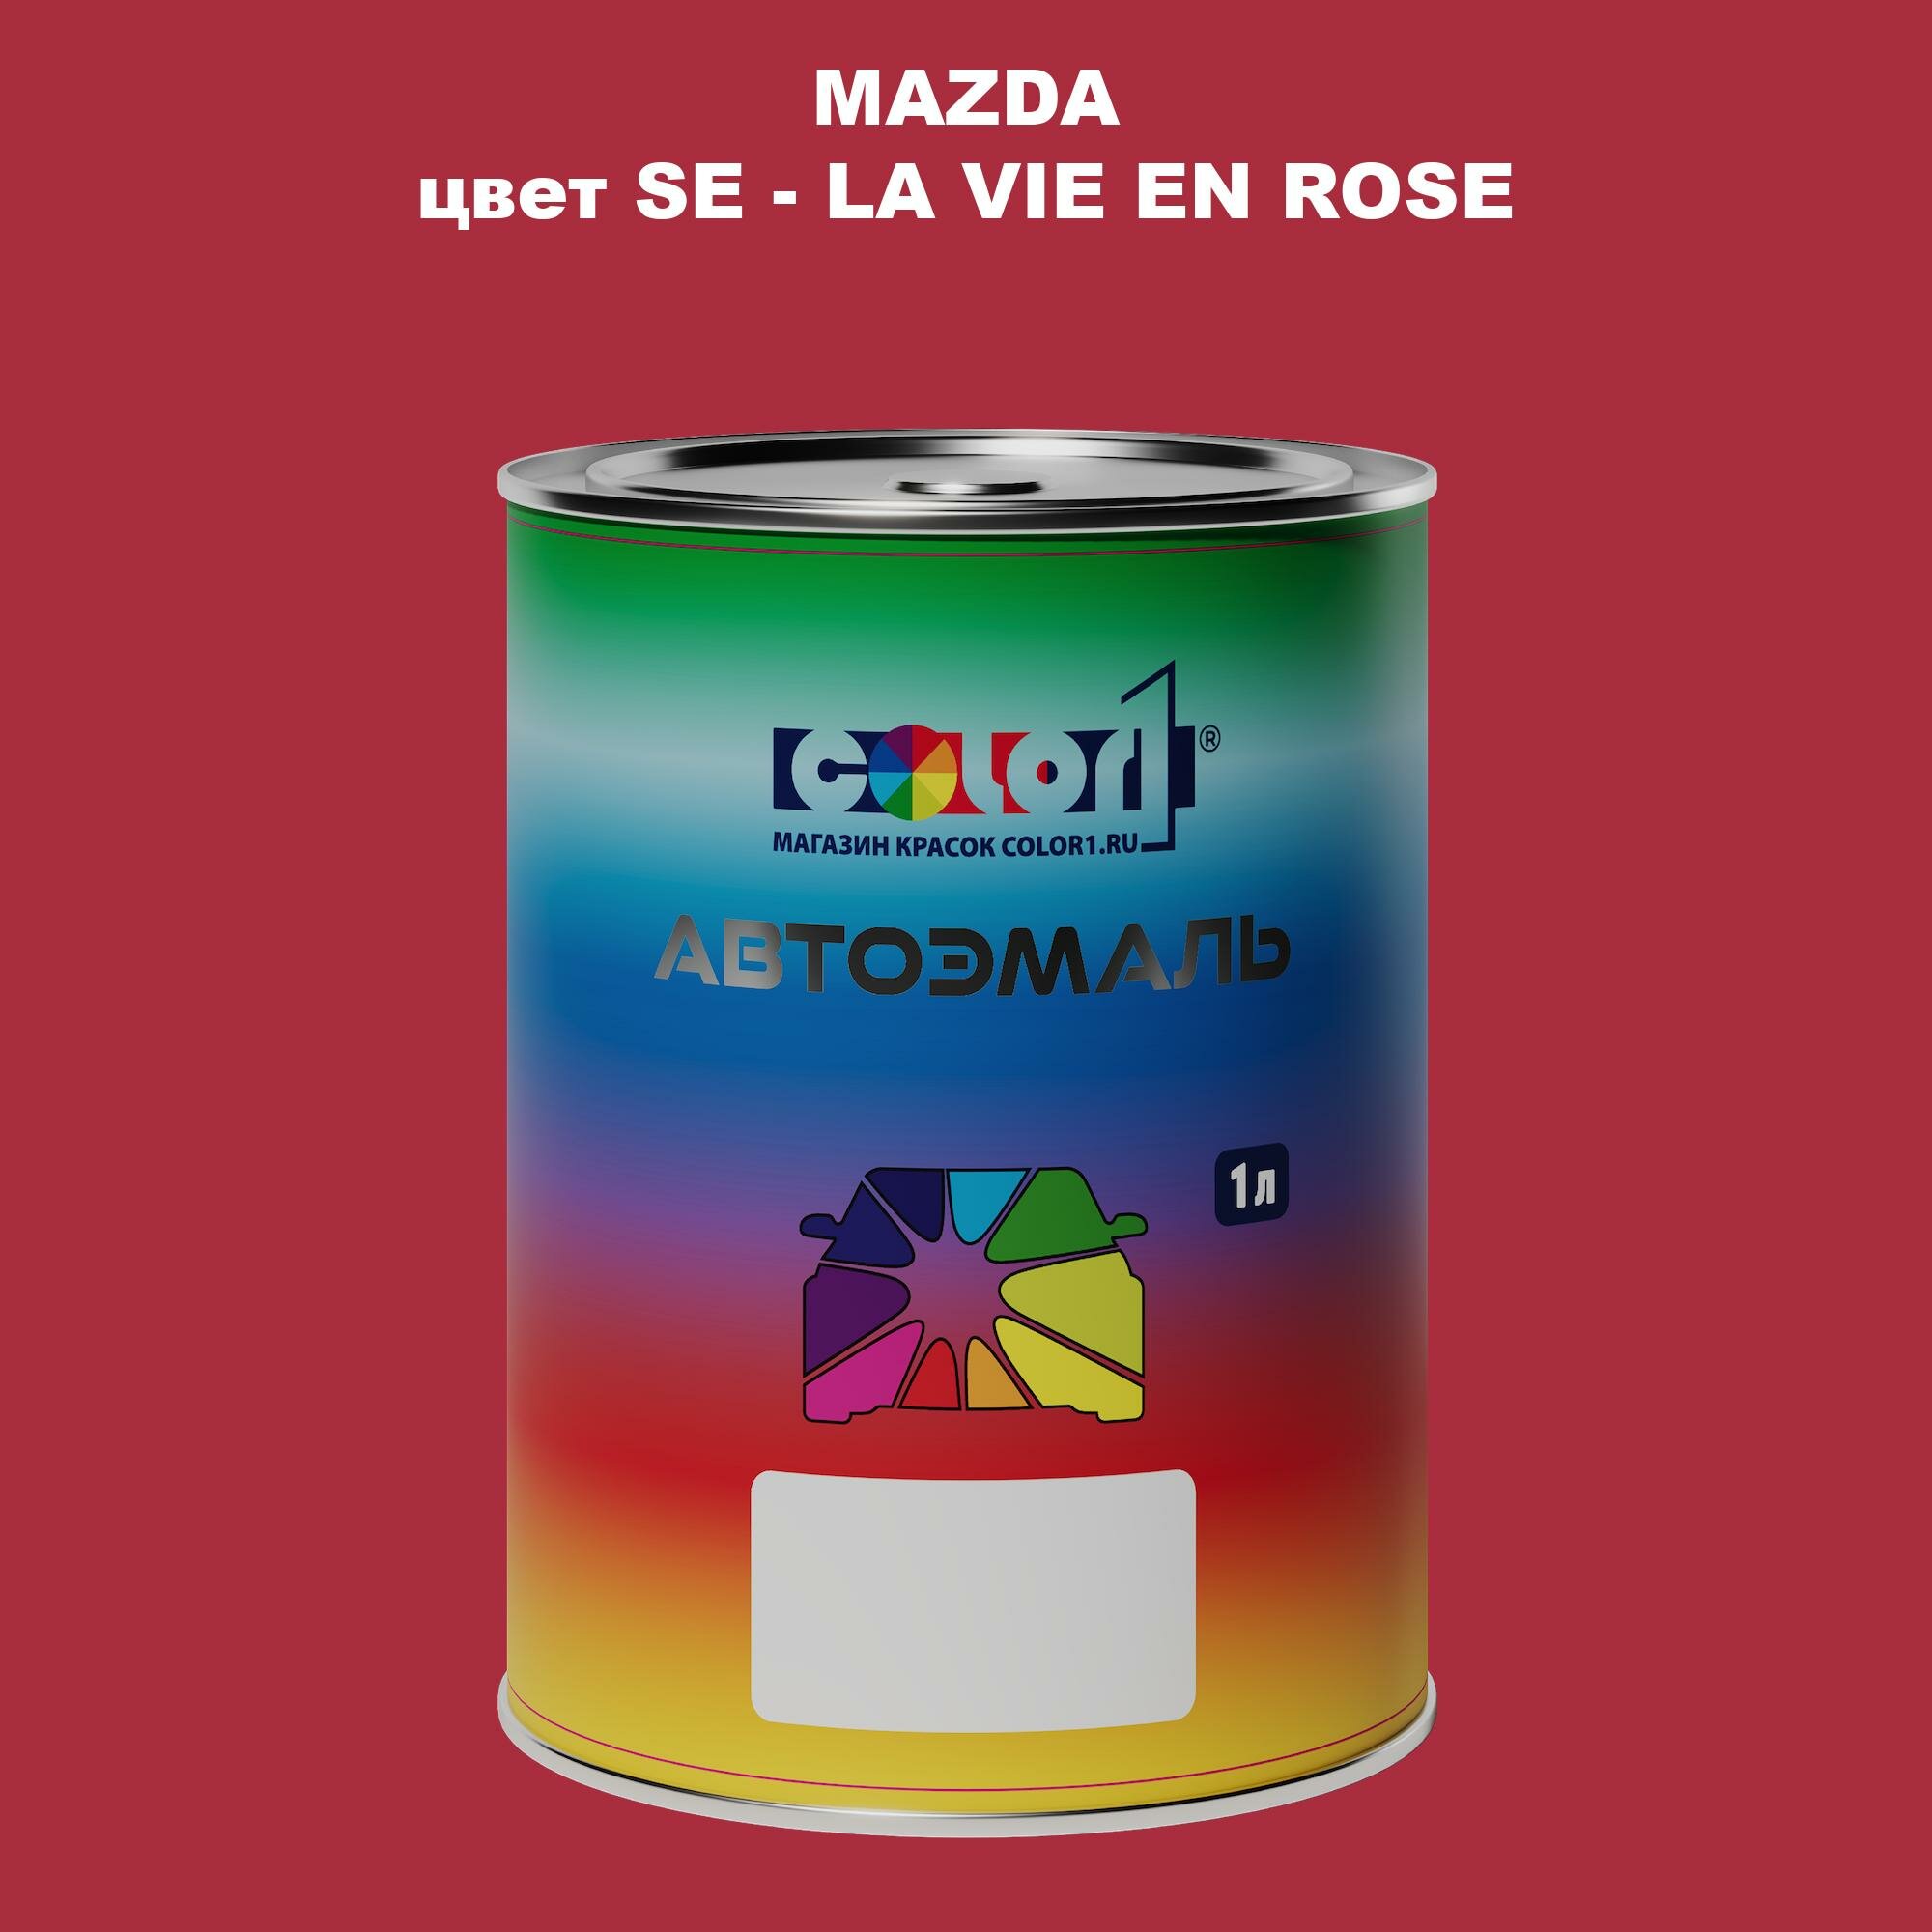 Автомобильная краска COLOR1 для MAZDA цвет SE - LA VIE EN ROSE